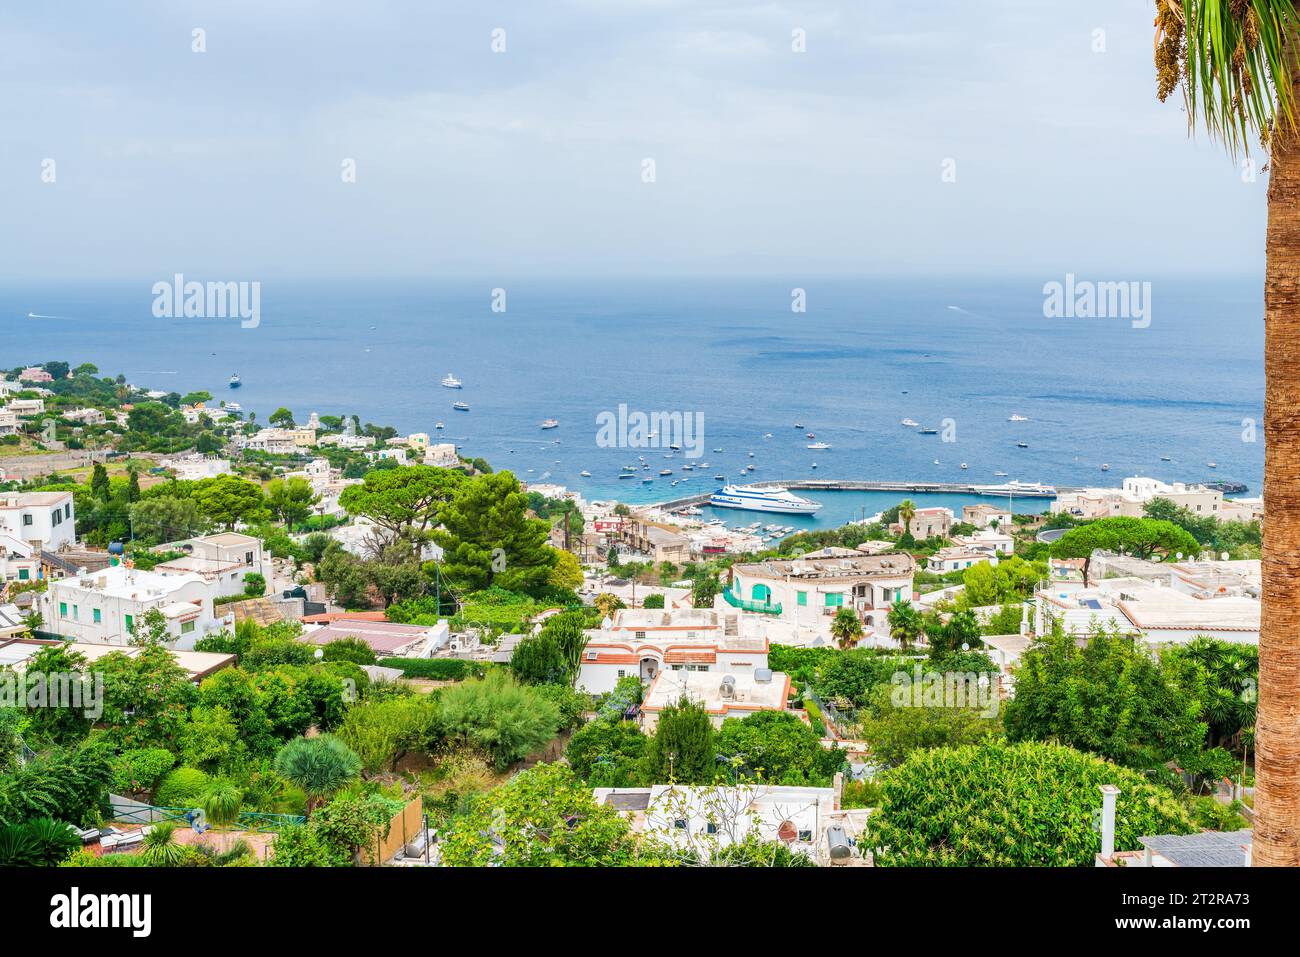 Vue imprenable sur Capri et une baie de Naples depuis le Mont Solaro sur l'île de Capri, Italie Banque D'Images